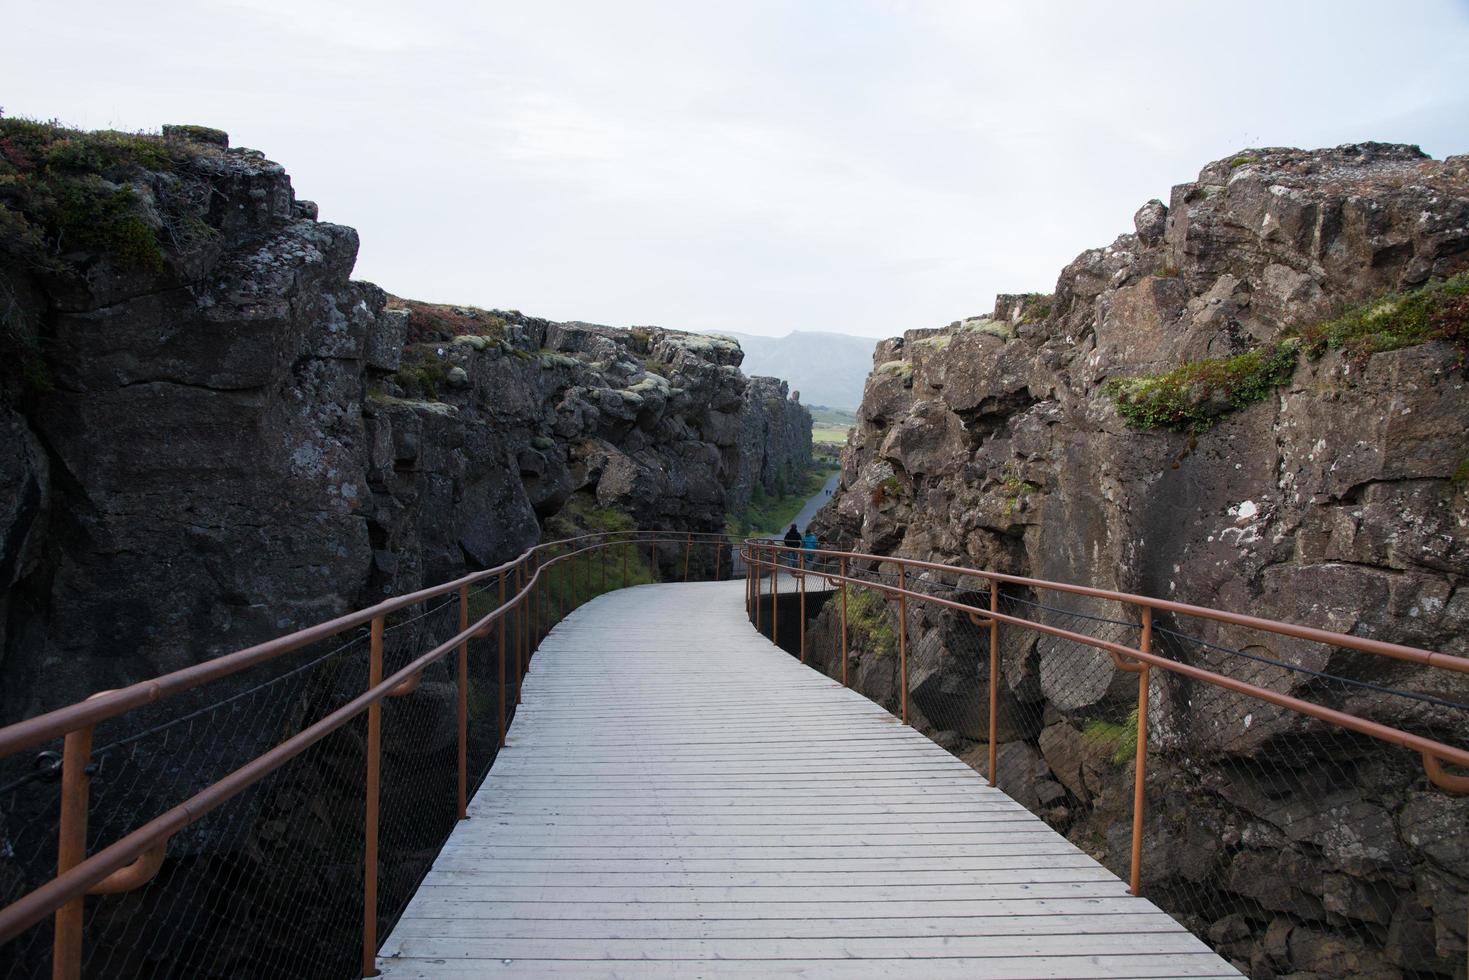 brug en wandelen pad Bij dingvellir, IJsland foto